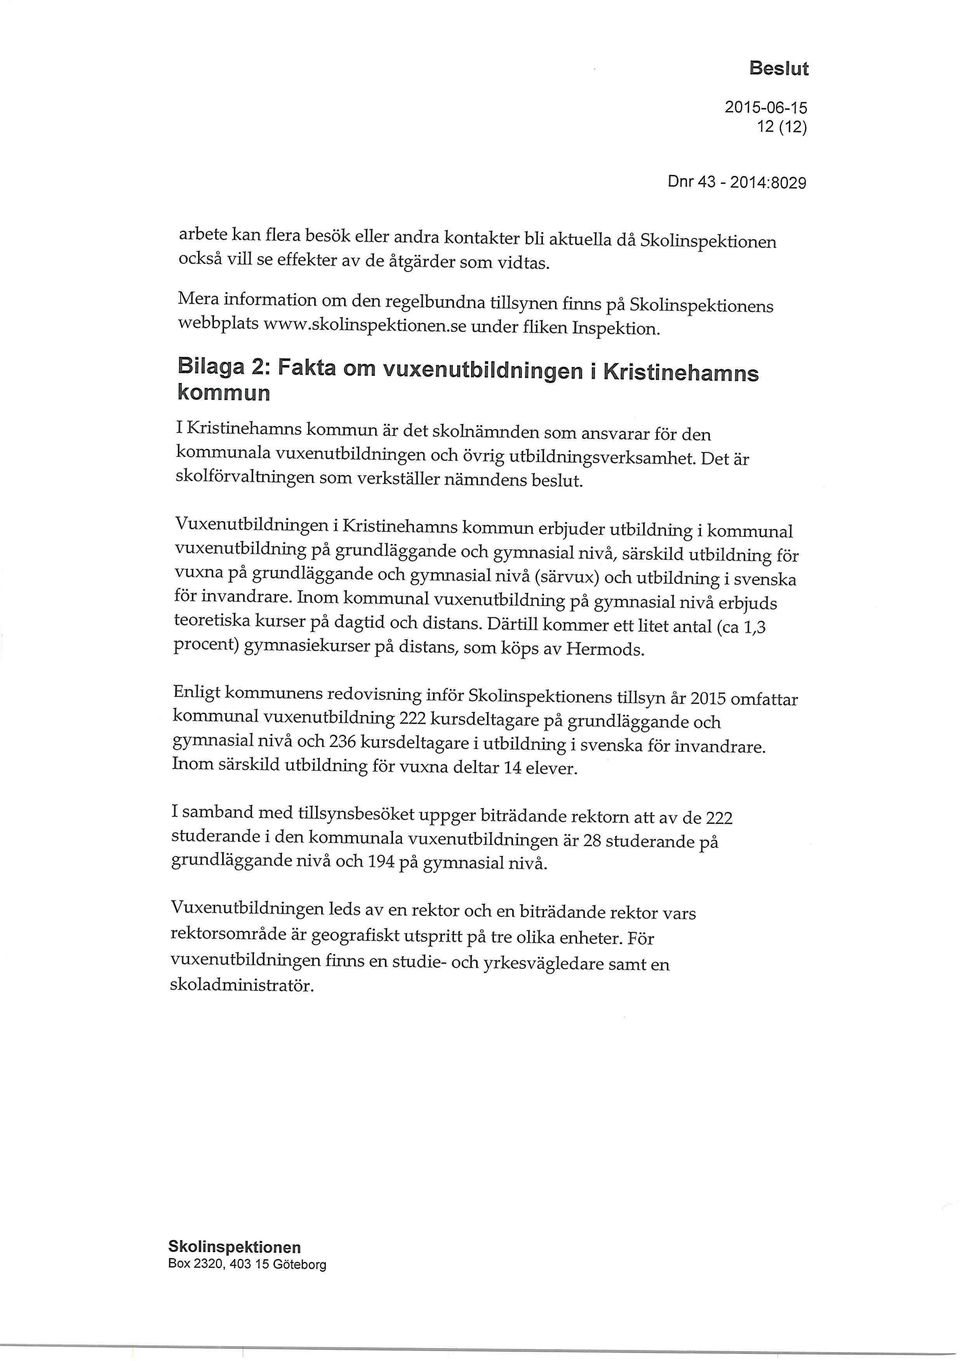 Bilaga 2: Fakta om vuxenutbildningen i Kristineharn[rDs kommun I Kristinehamns kommun är det skolnämnden som ansvarar för den kommunala vuxenutbildningen och övrig utbildningsverksamhet.